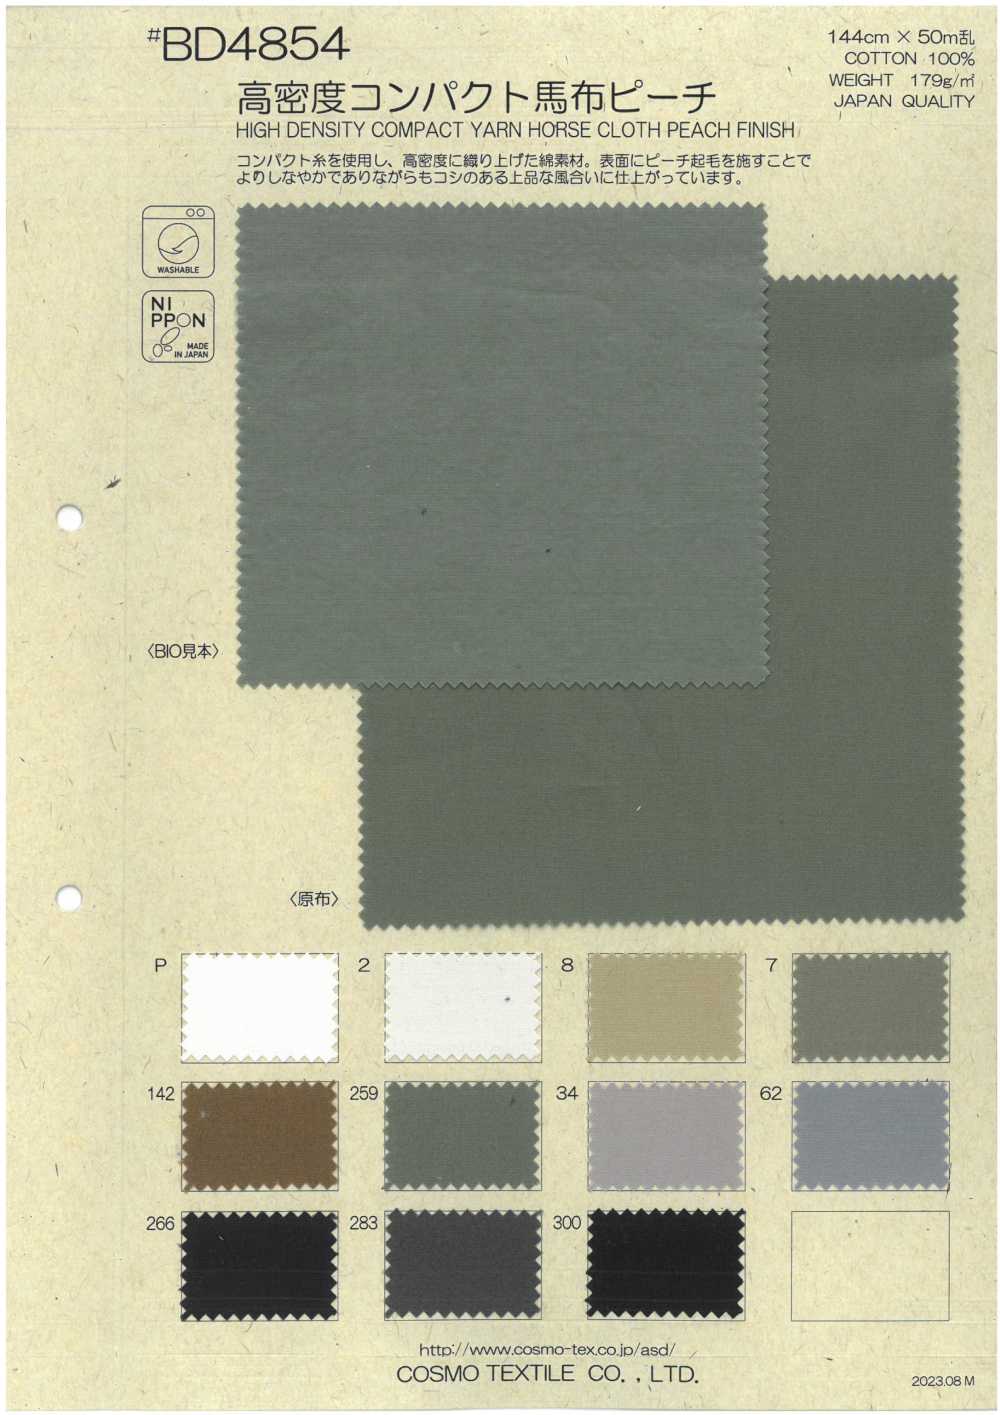 BD4854 Kompakte Popeline Mit Hoher Dichte, Pfirsichfarben[Textilgewebe] COSMO TEXTILE